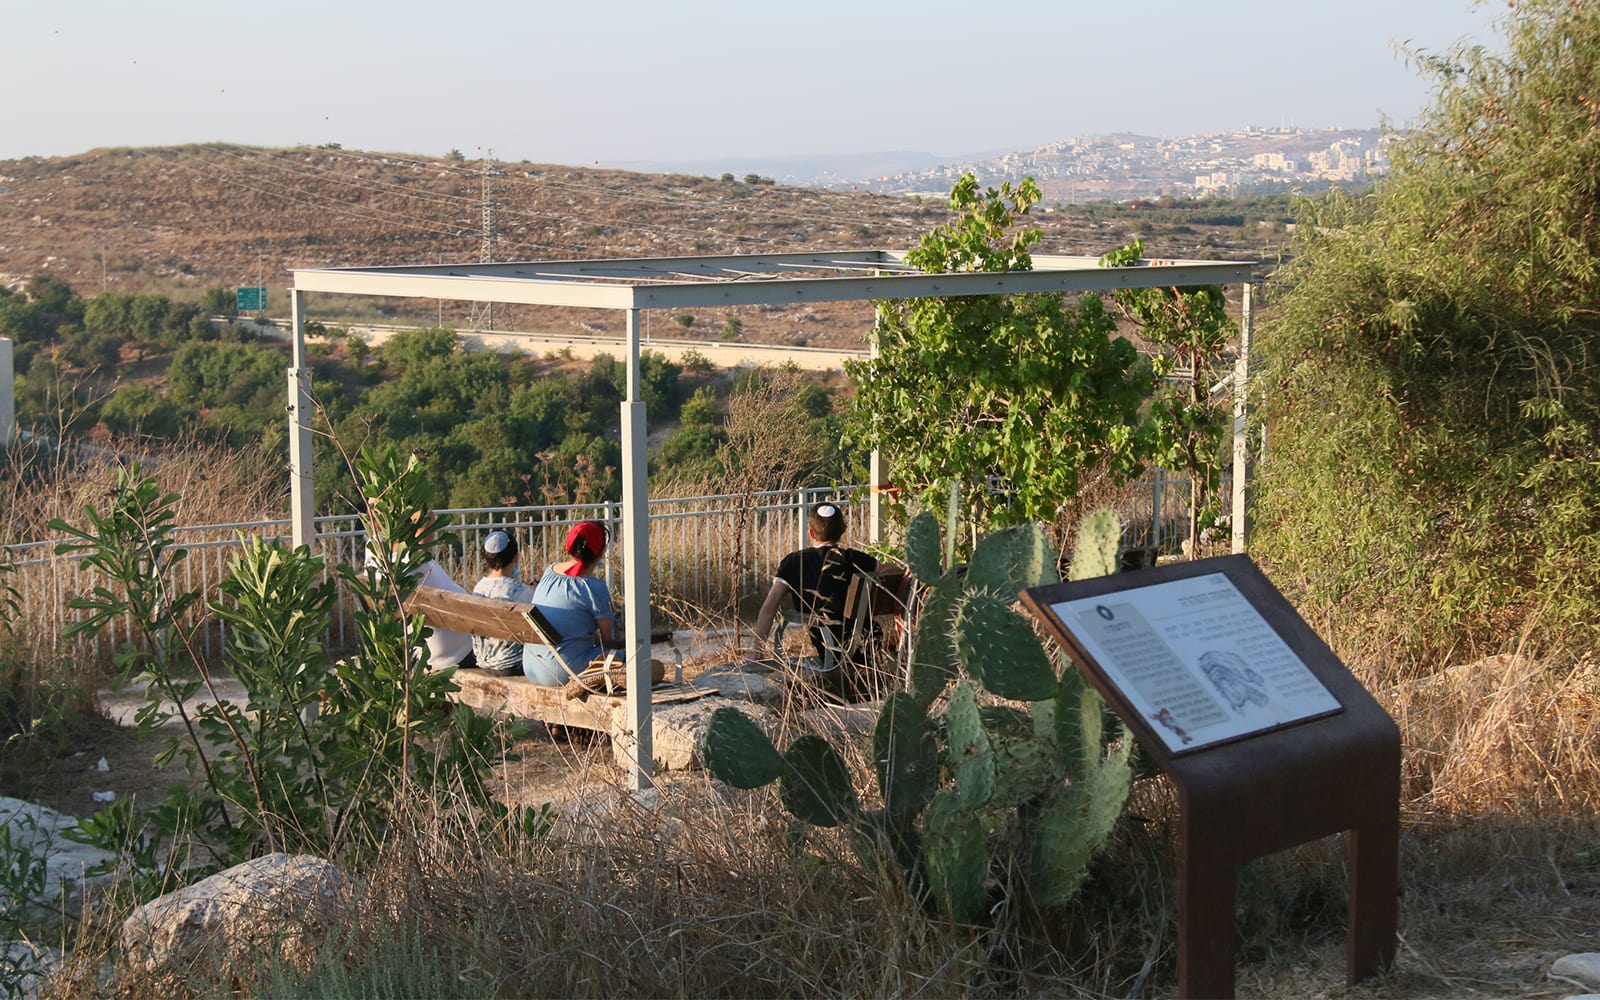 תצפית ליד מקווה, בגן הארכיאולוגי גבעת התיתורה (צילום: שמואל בר-עם)